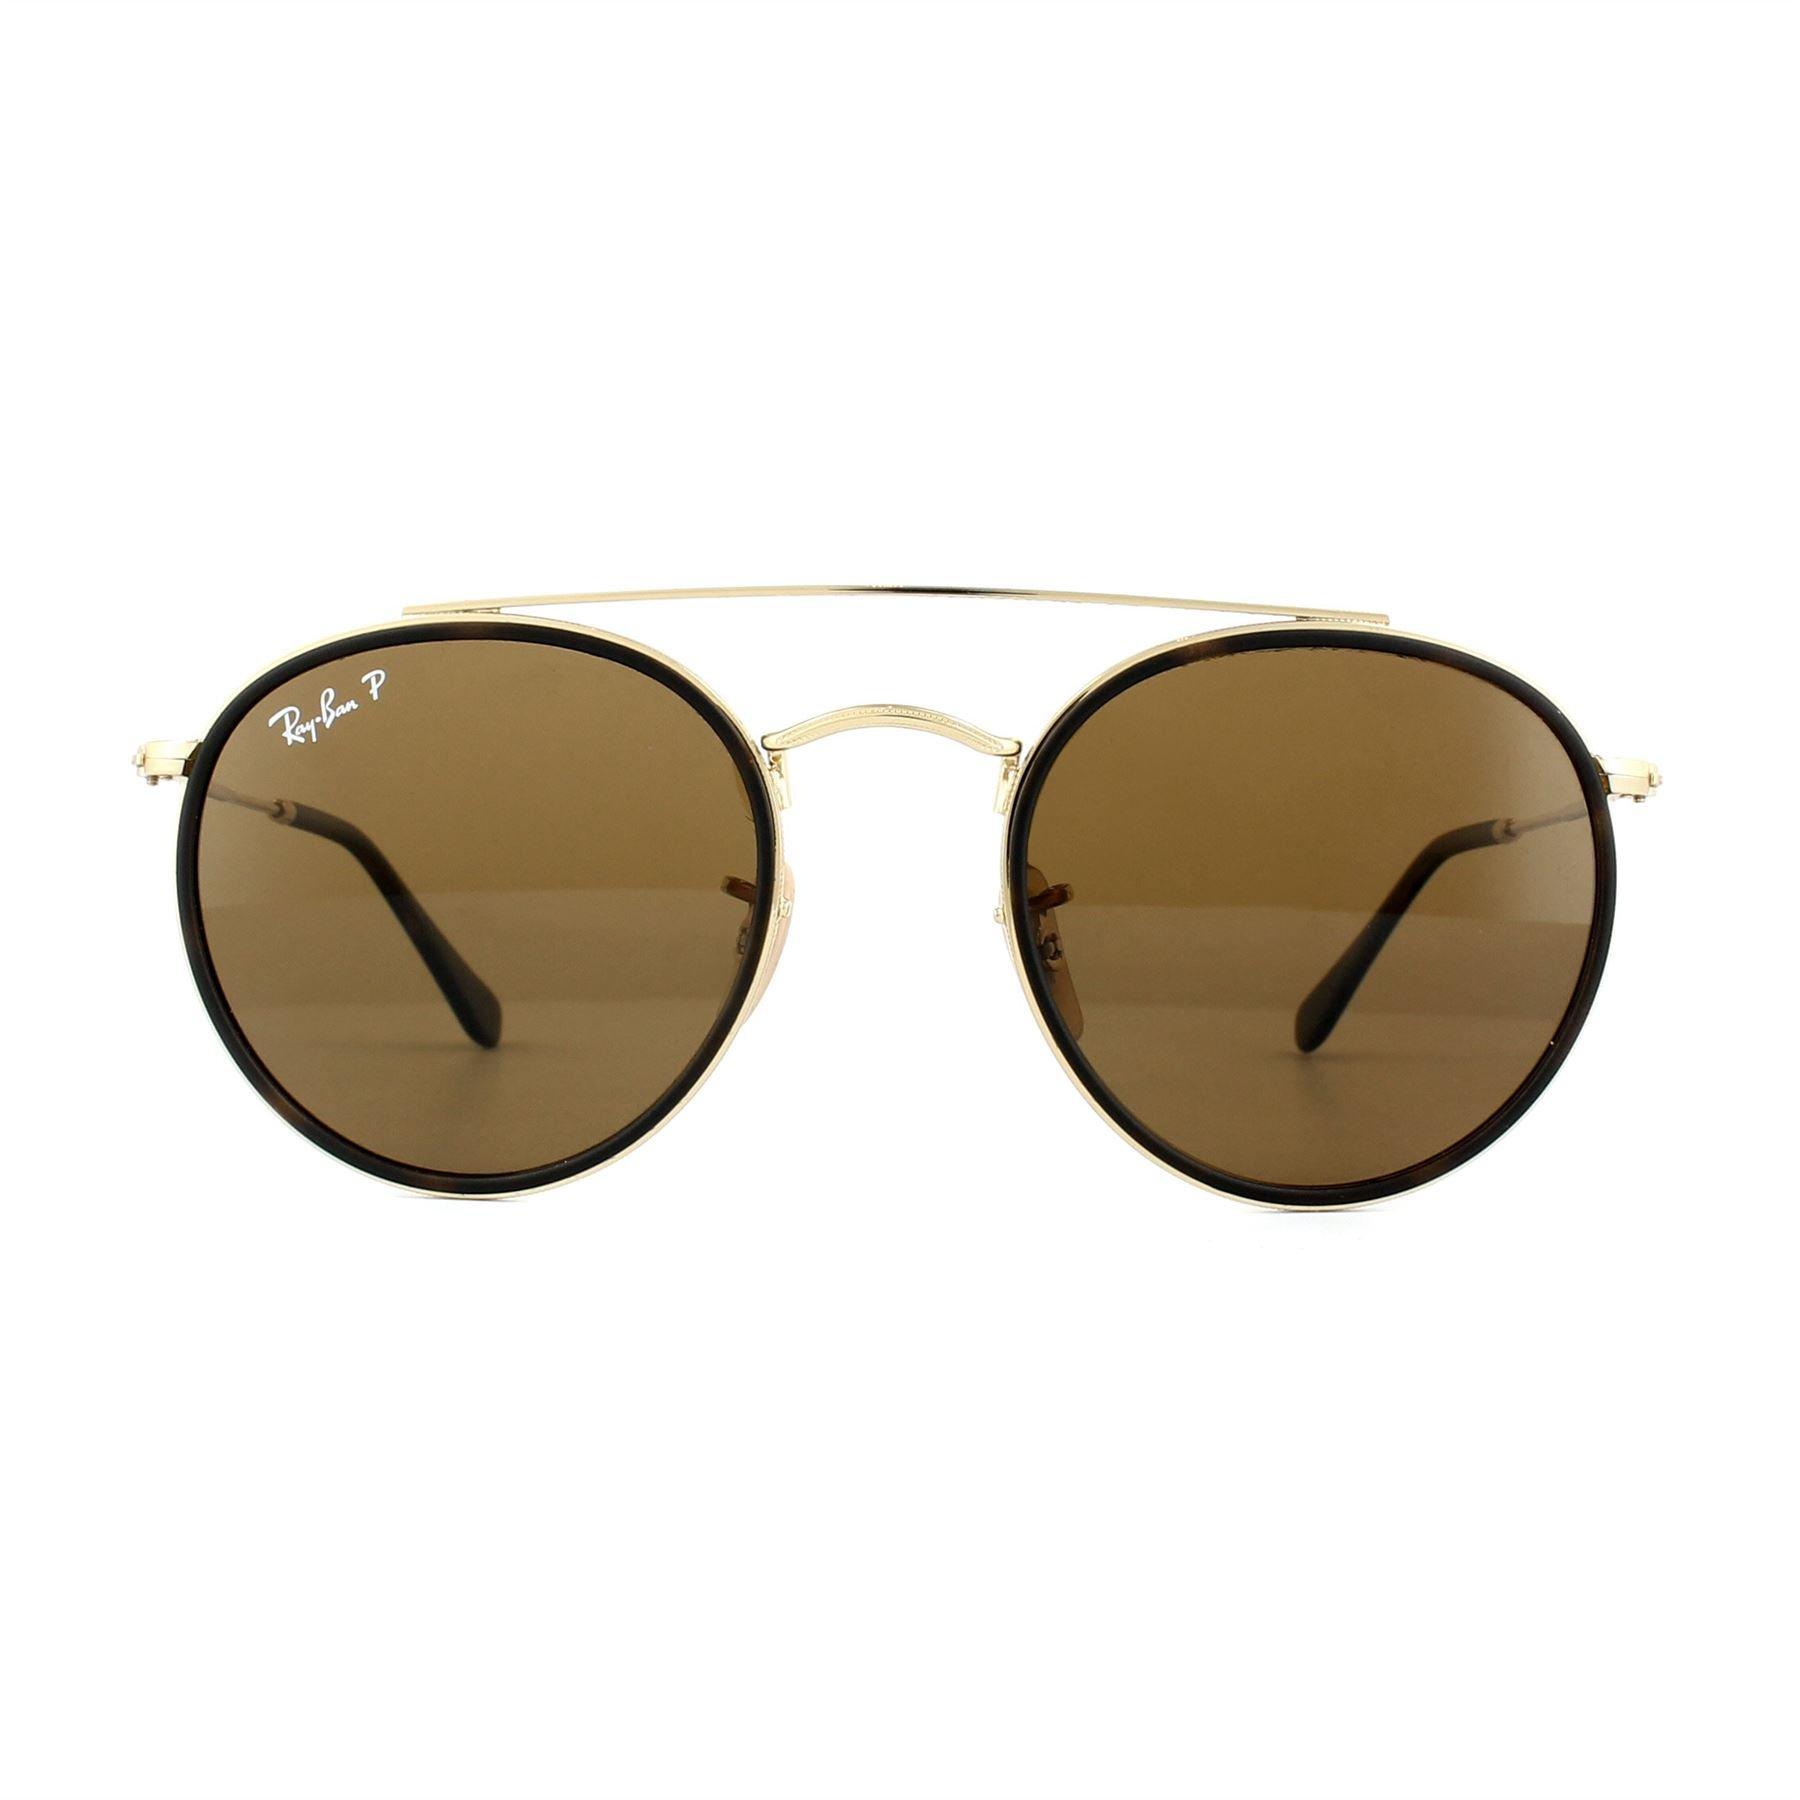 Круглые золотисто-коричневые поляризованные солнцезащитные очки B-15 Ray-Ban, золото очки ray ban rb 3647n 001 round double bridge